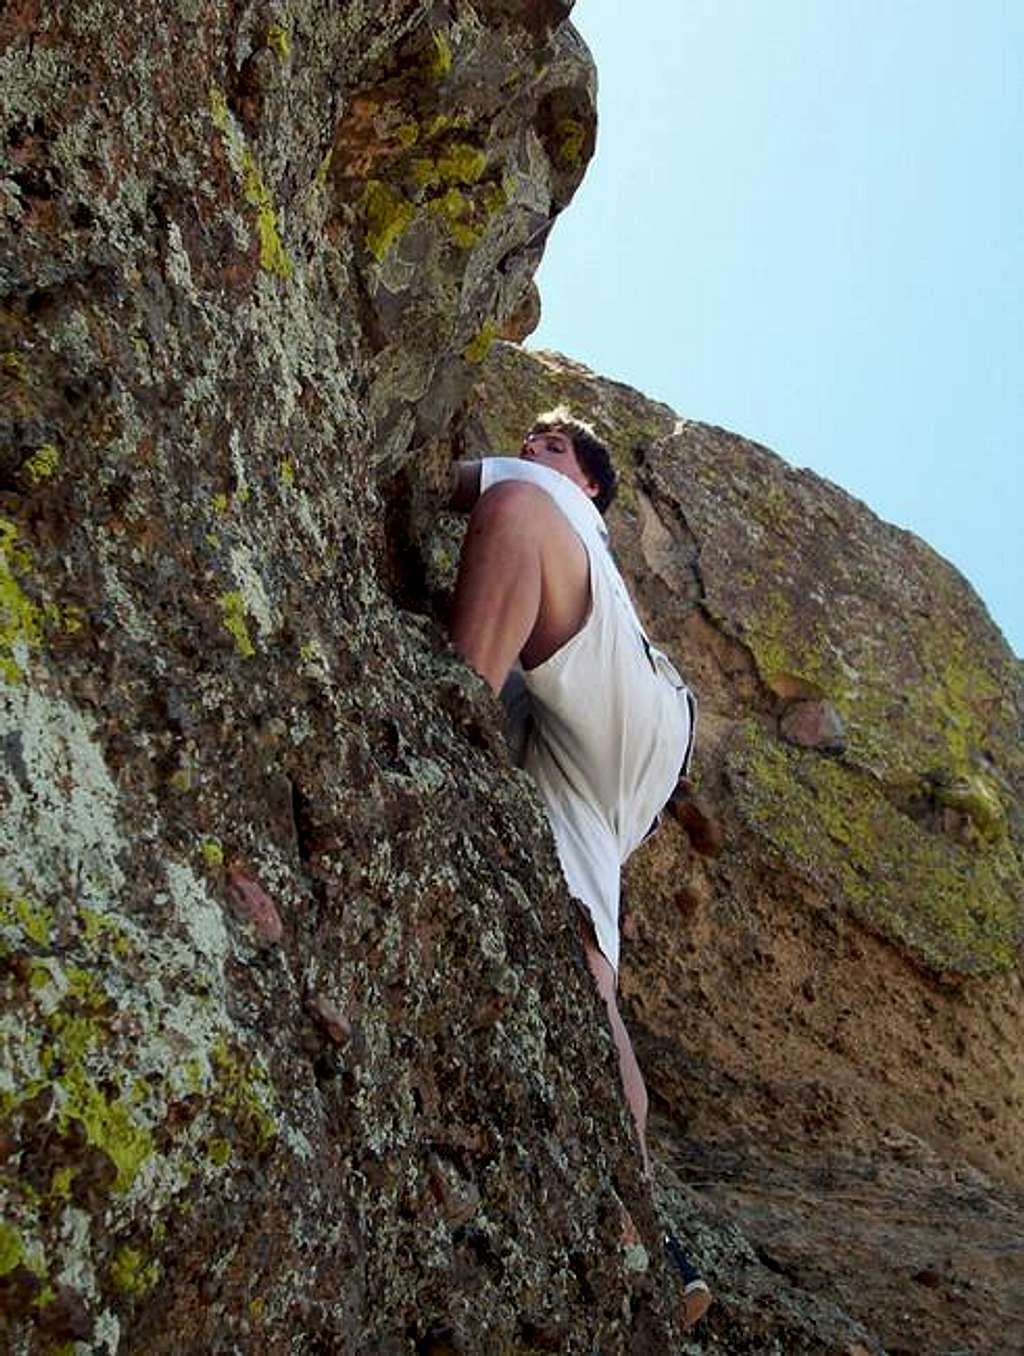 My partner climbing a crag...